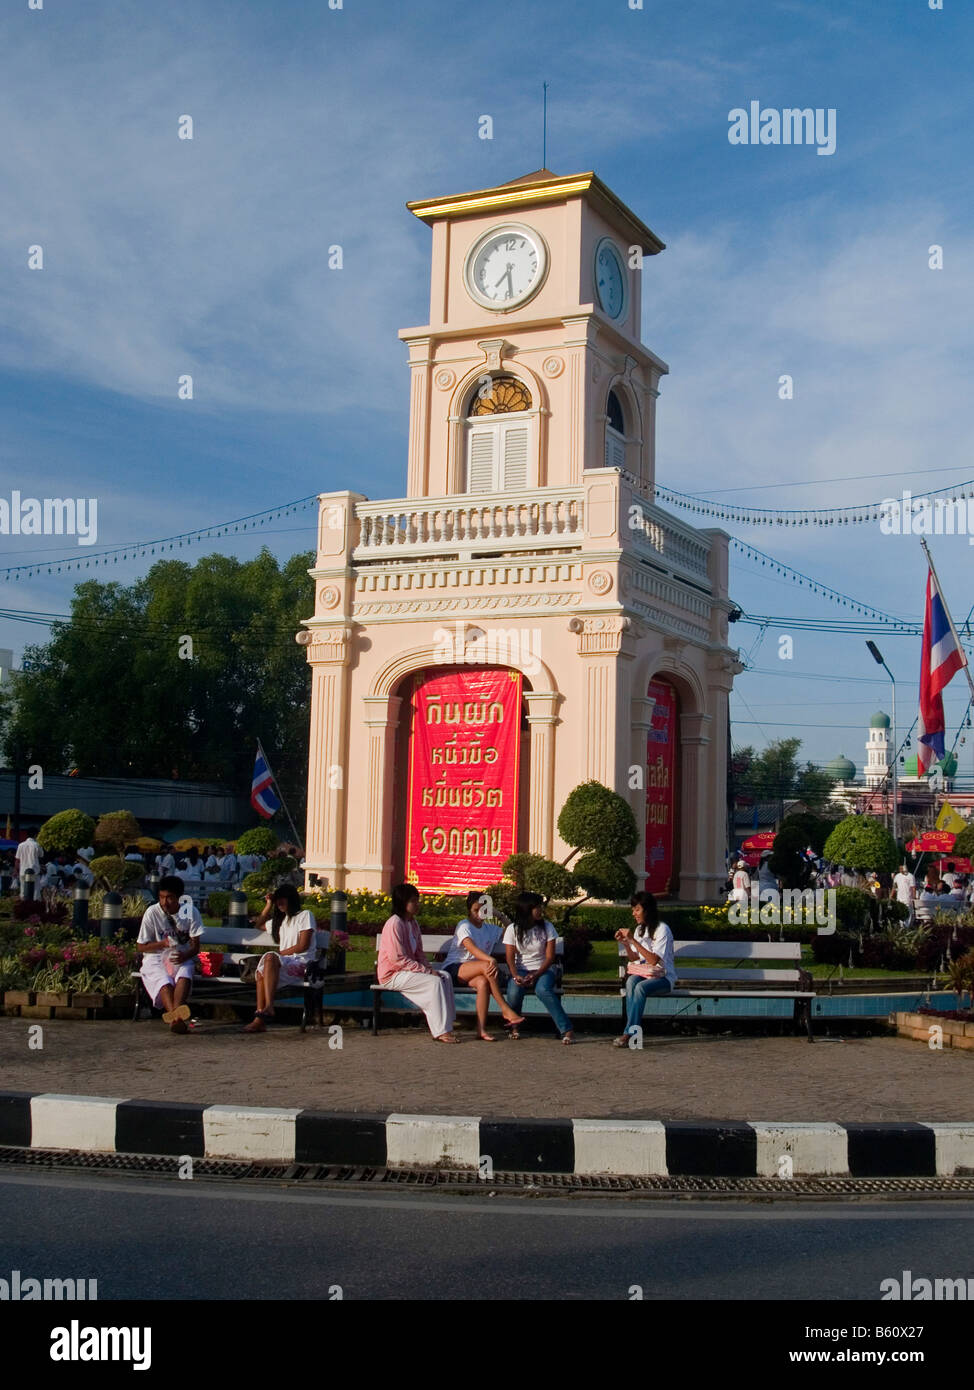 sitting around the clocktower in Phuket Thailand Stock Photo